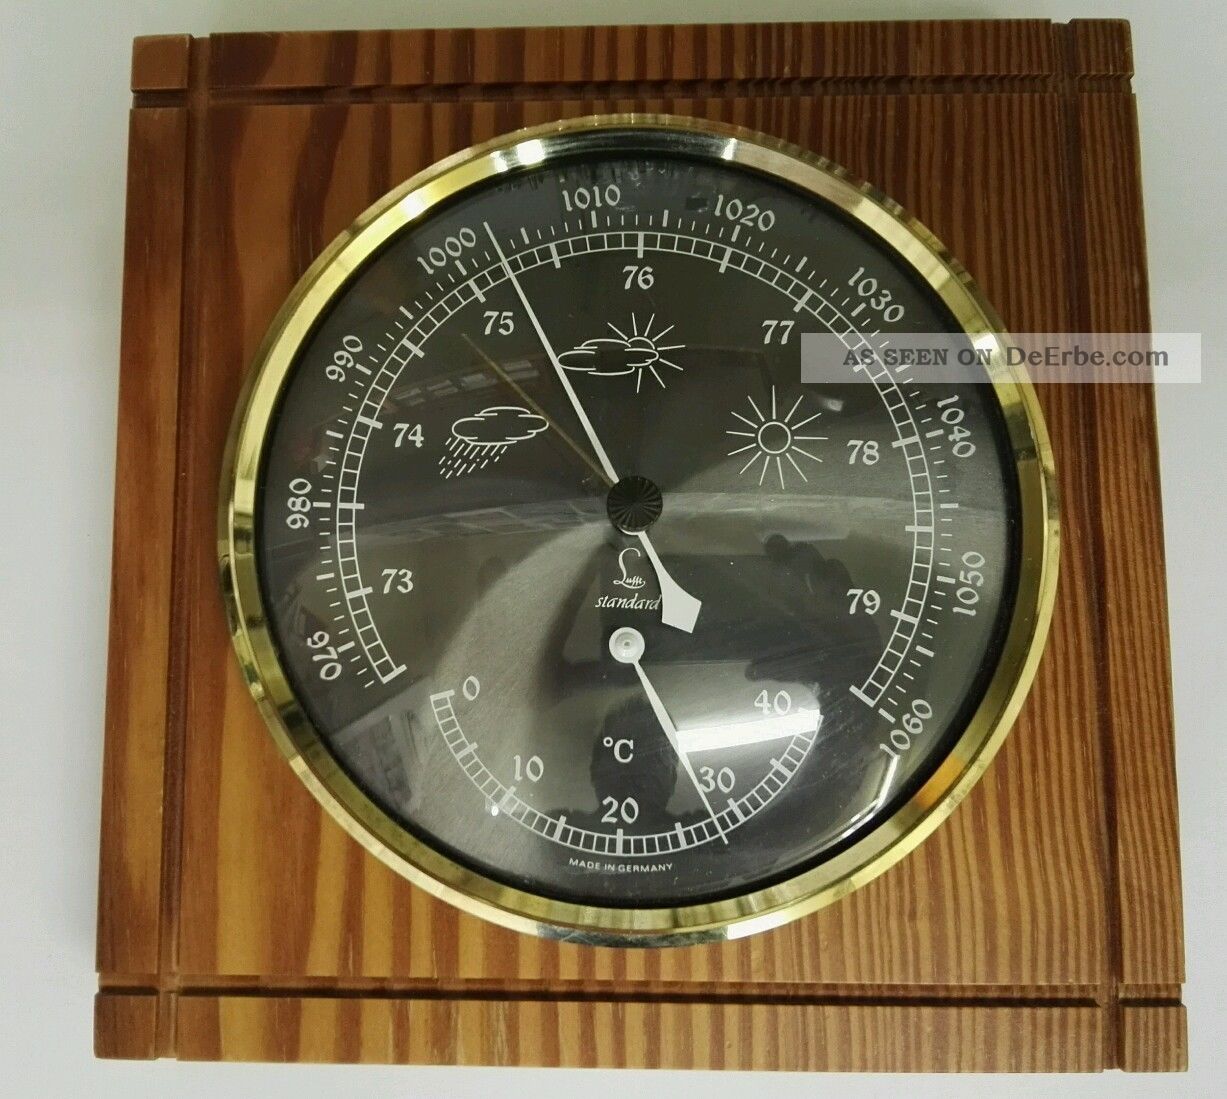 Lufft - Barometer & Thermometer - Schönes Stück Wettergeräte Bild